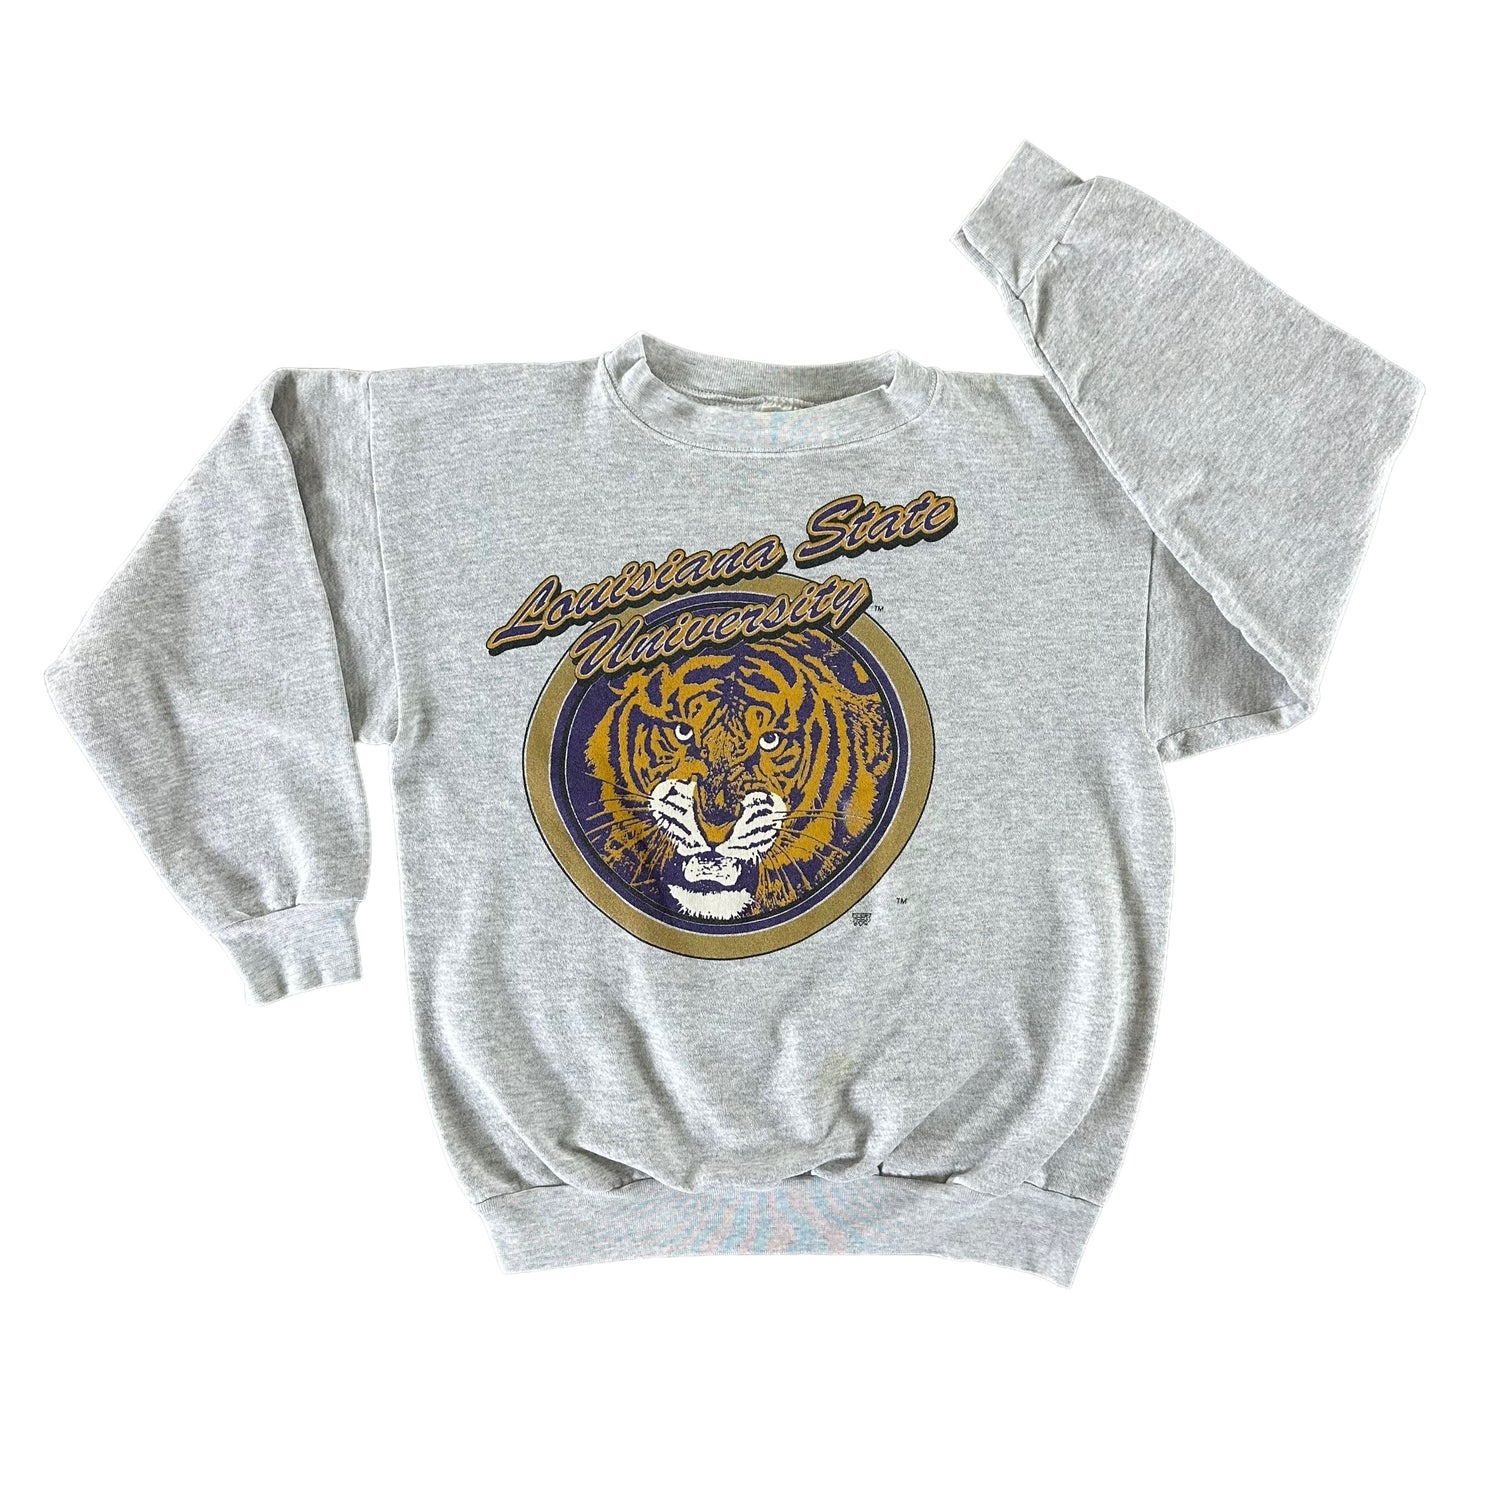 Vintage 1990s Louisiana State University Sweatshirt size Large